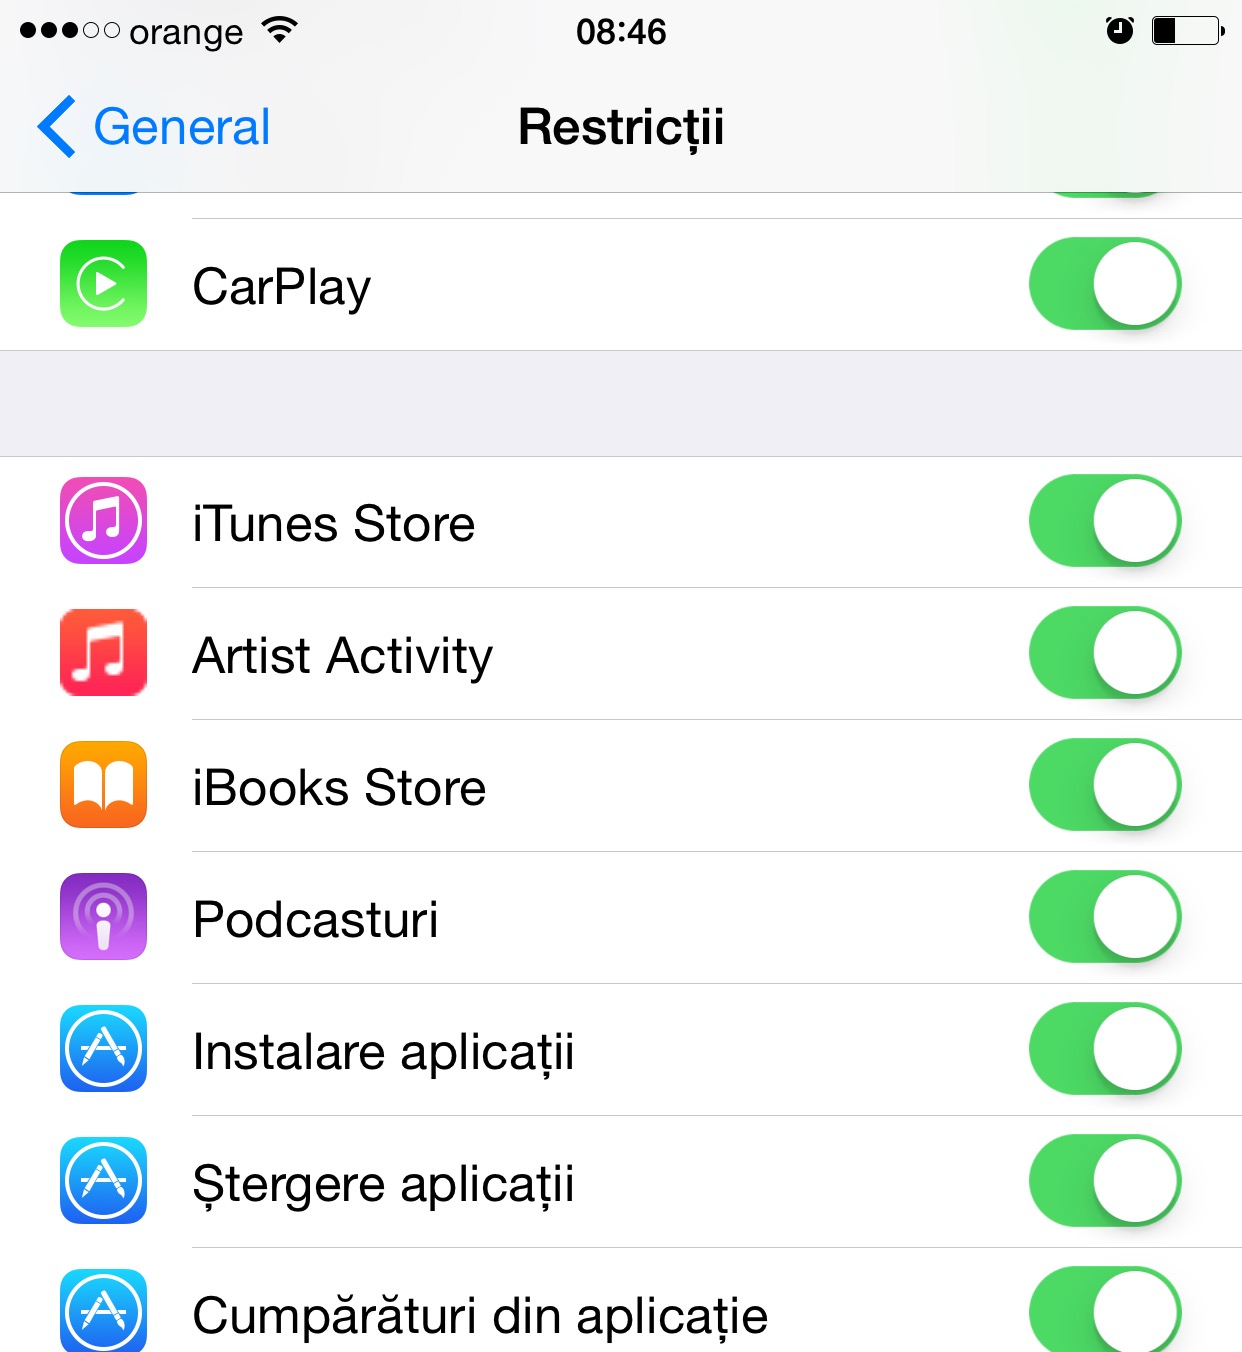 Activité de l'artiste Apple Music iOS 8.4